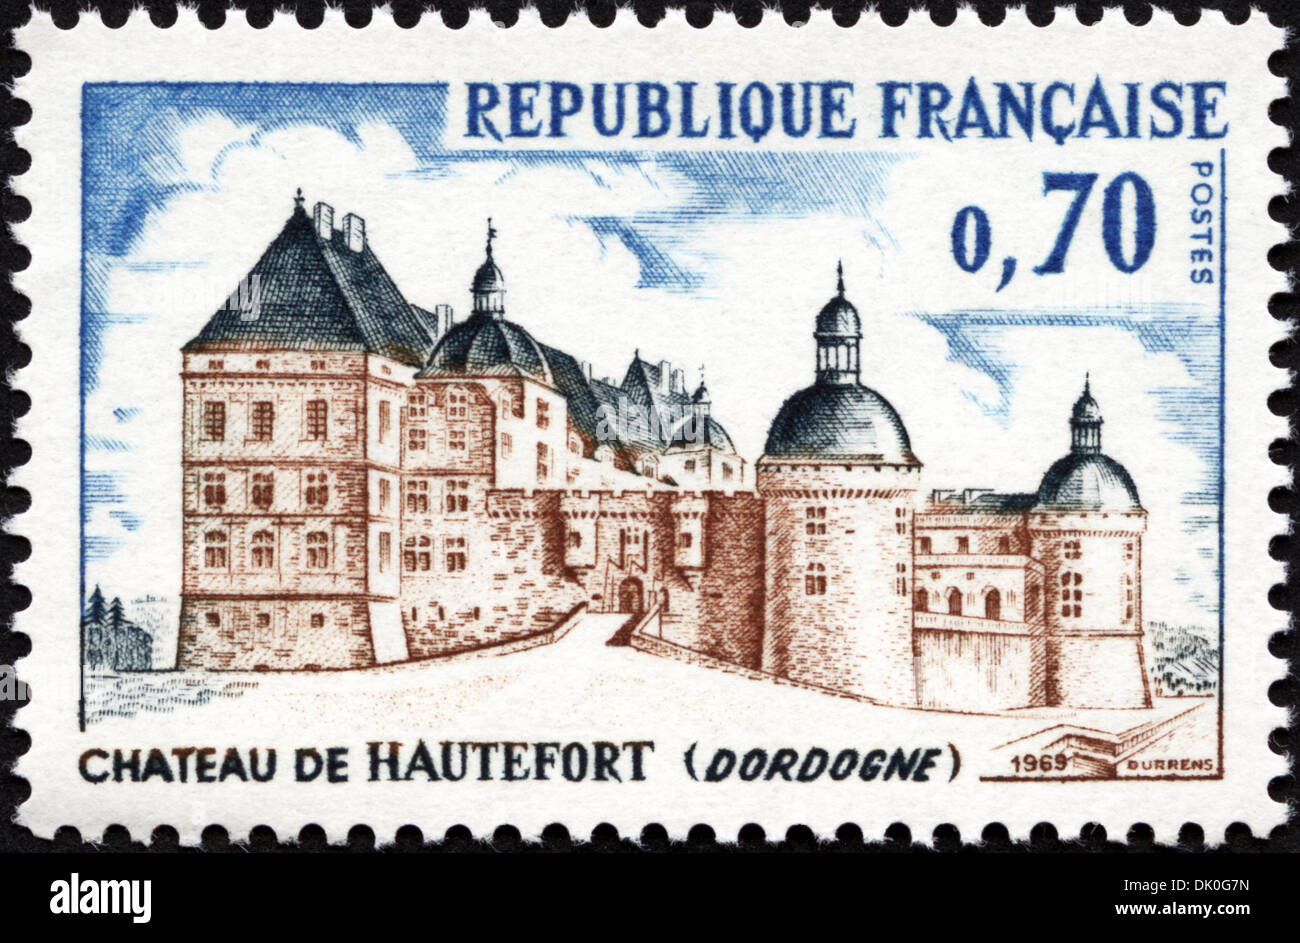 Francobollo Repubblica francese 0,70 dotate di Chateau De Hautefort ( Dordogne ) rilasciato 1969 Foto Stock